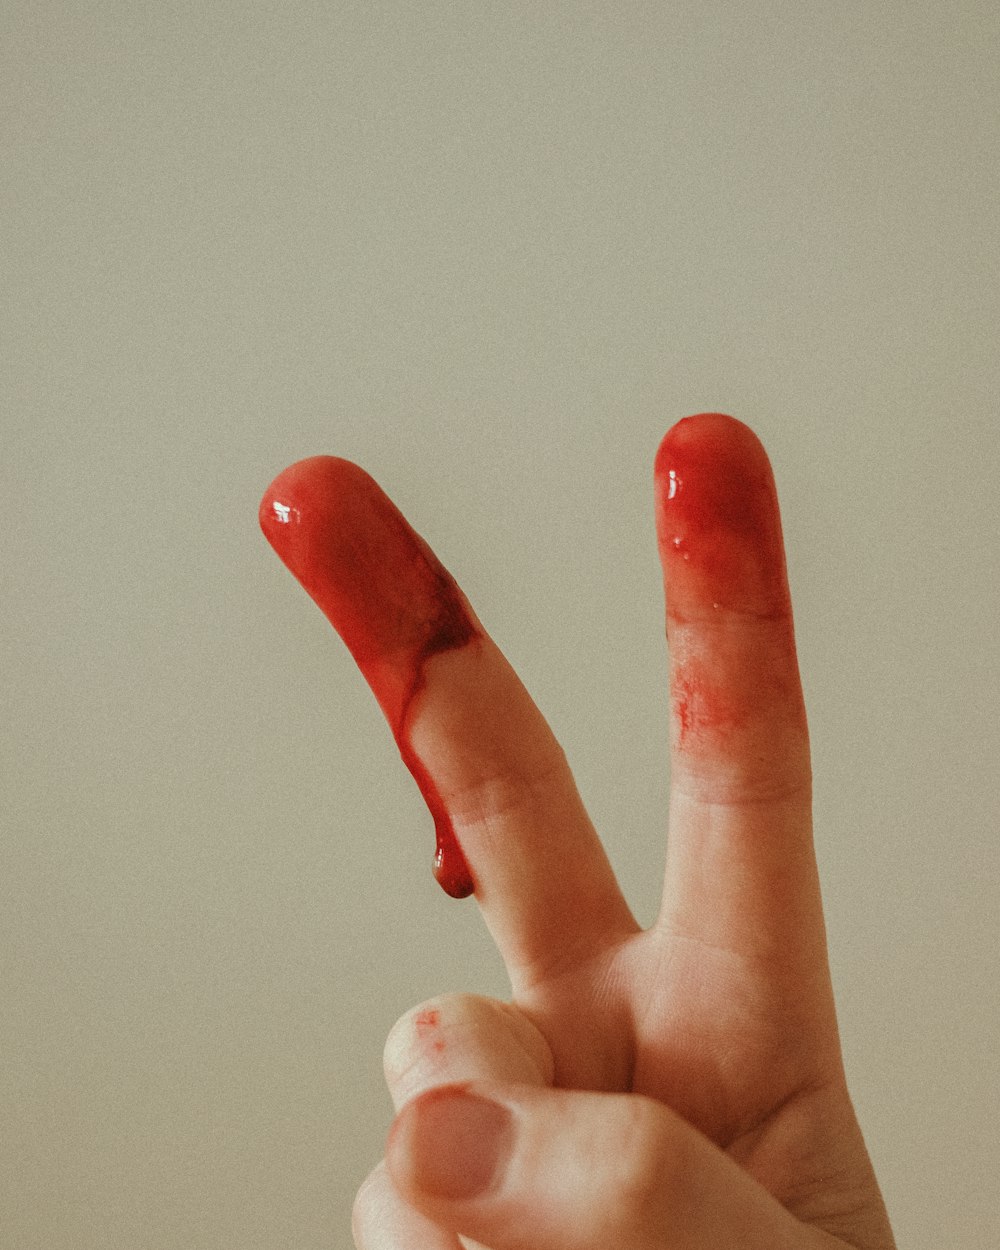 pessoa com manicure vermelha fazendo sinal de paz